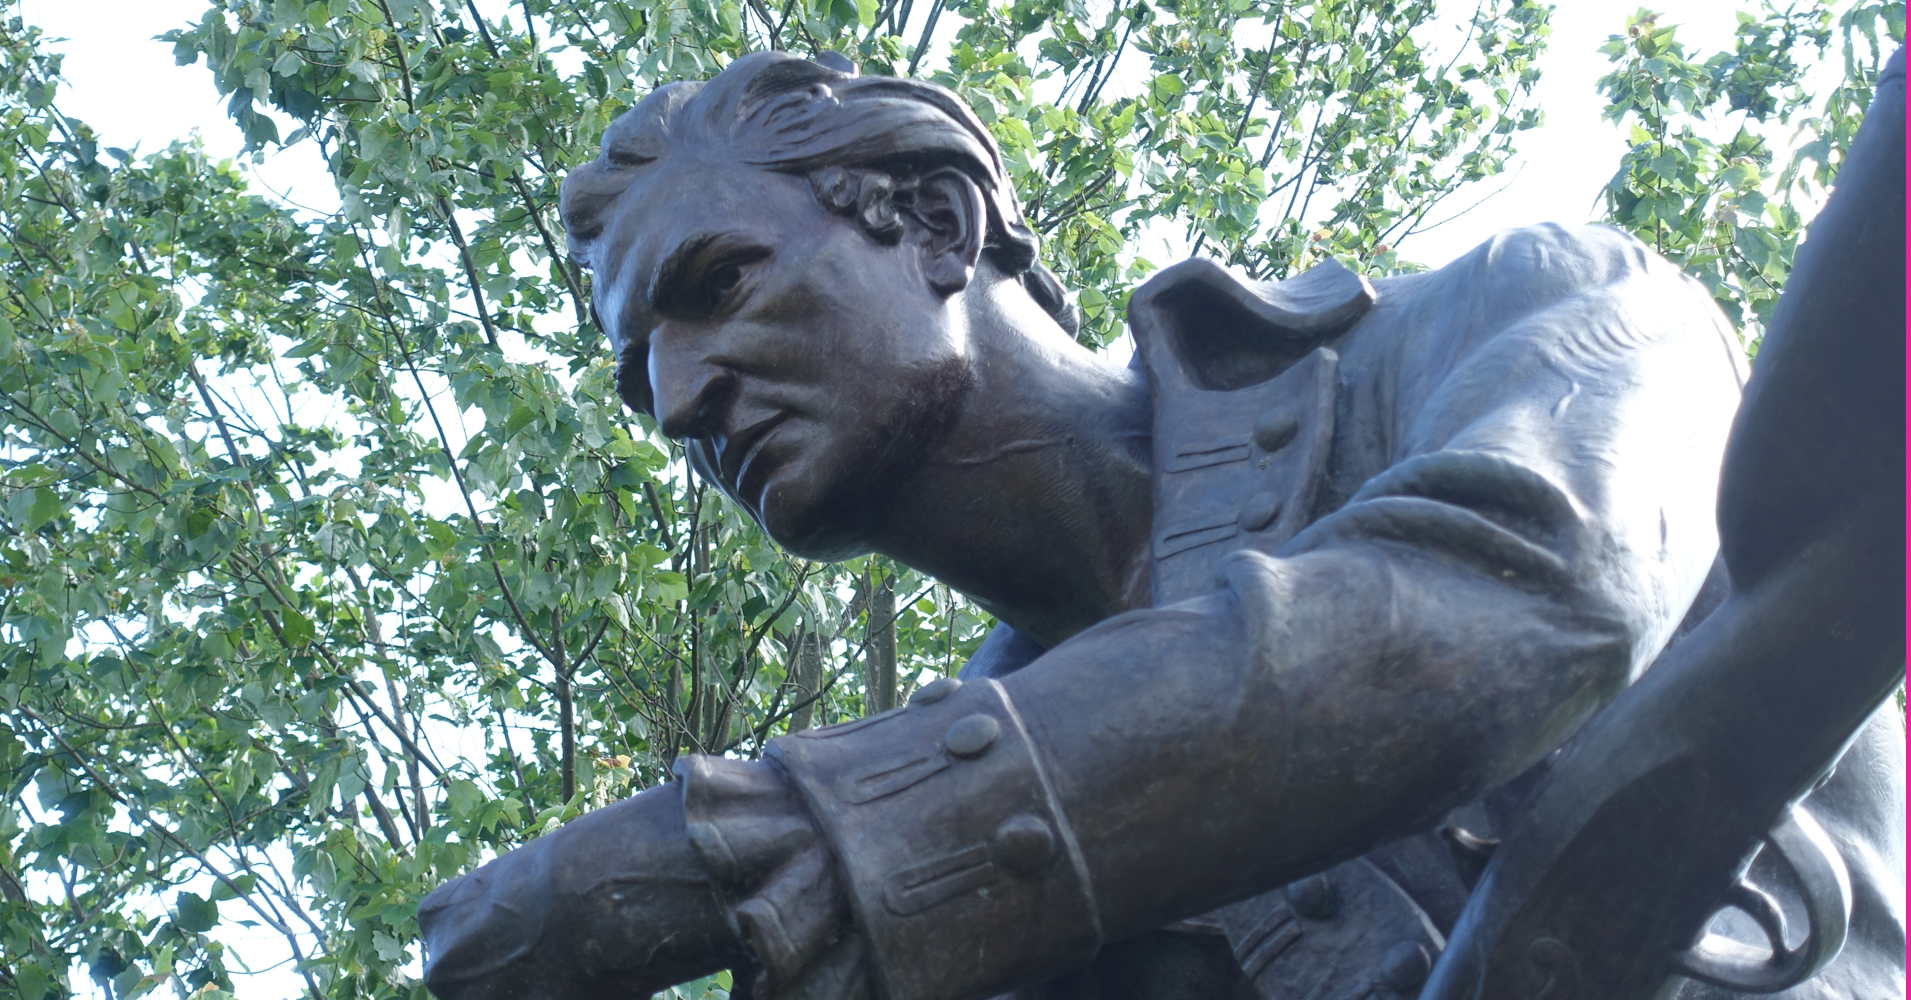 Thomas Paine in Morristown, N.J.